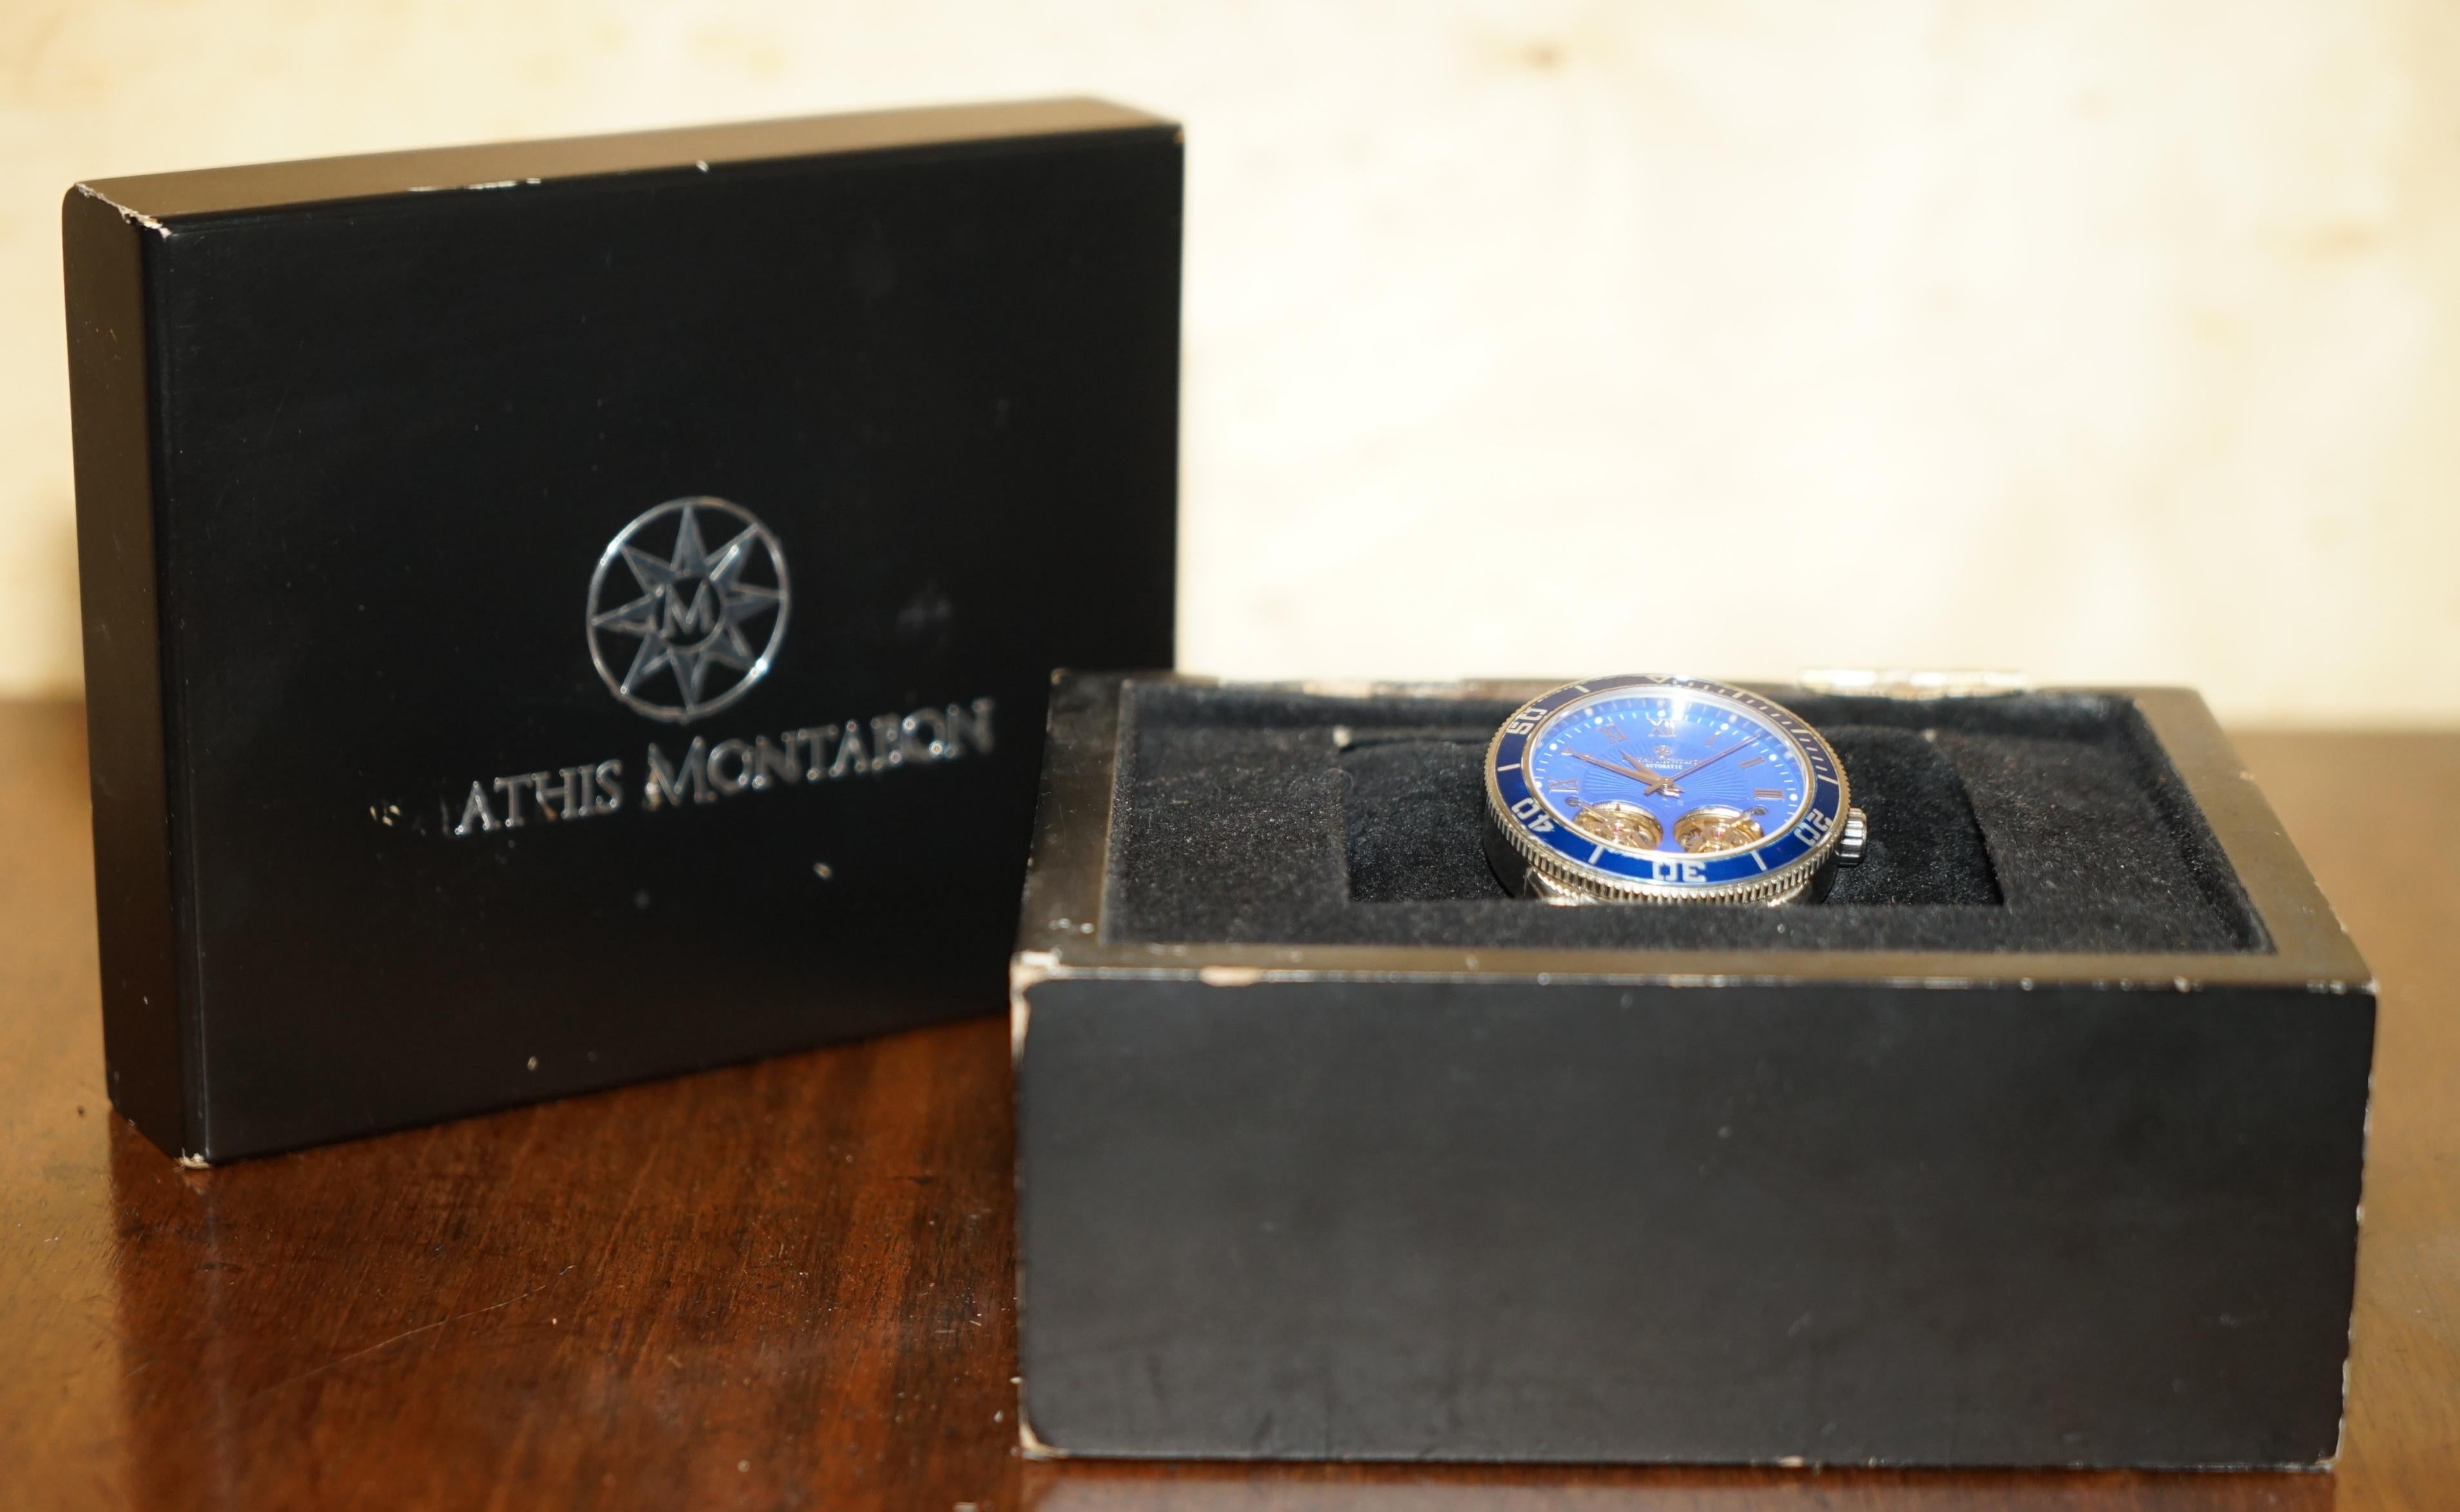 Royal House Antiques

Royal House Antiques a le plaisir de proposer à la vente cette très belle montre-bracelet chronographe Manthis Montabon 42mm RRP £1200.

Une montre pour homme décorative et élégante, avec un cadran bleu électrique et un